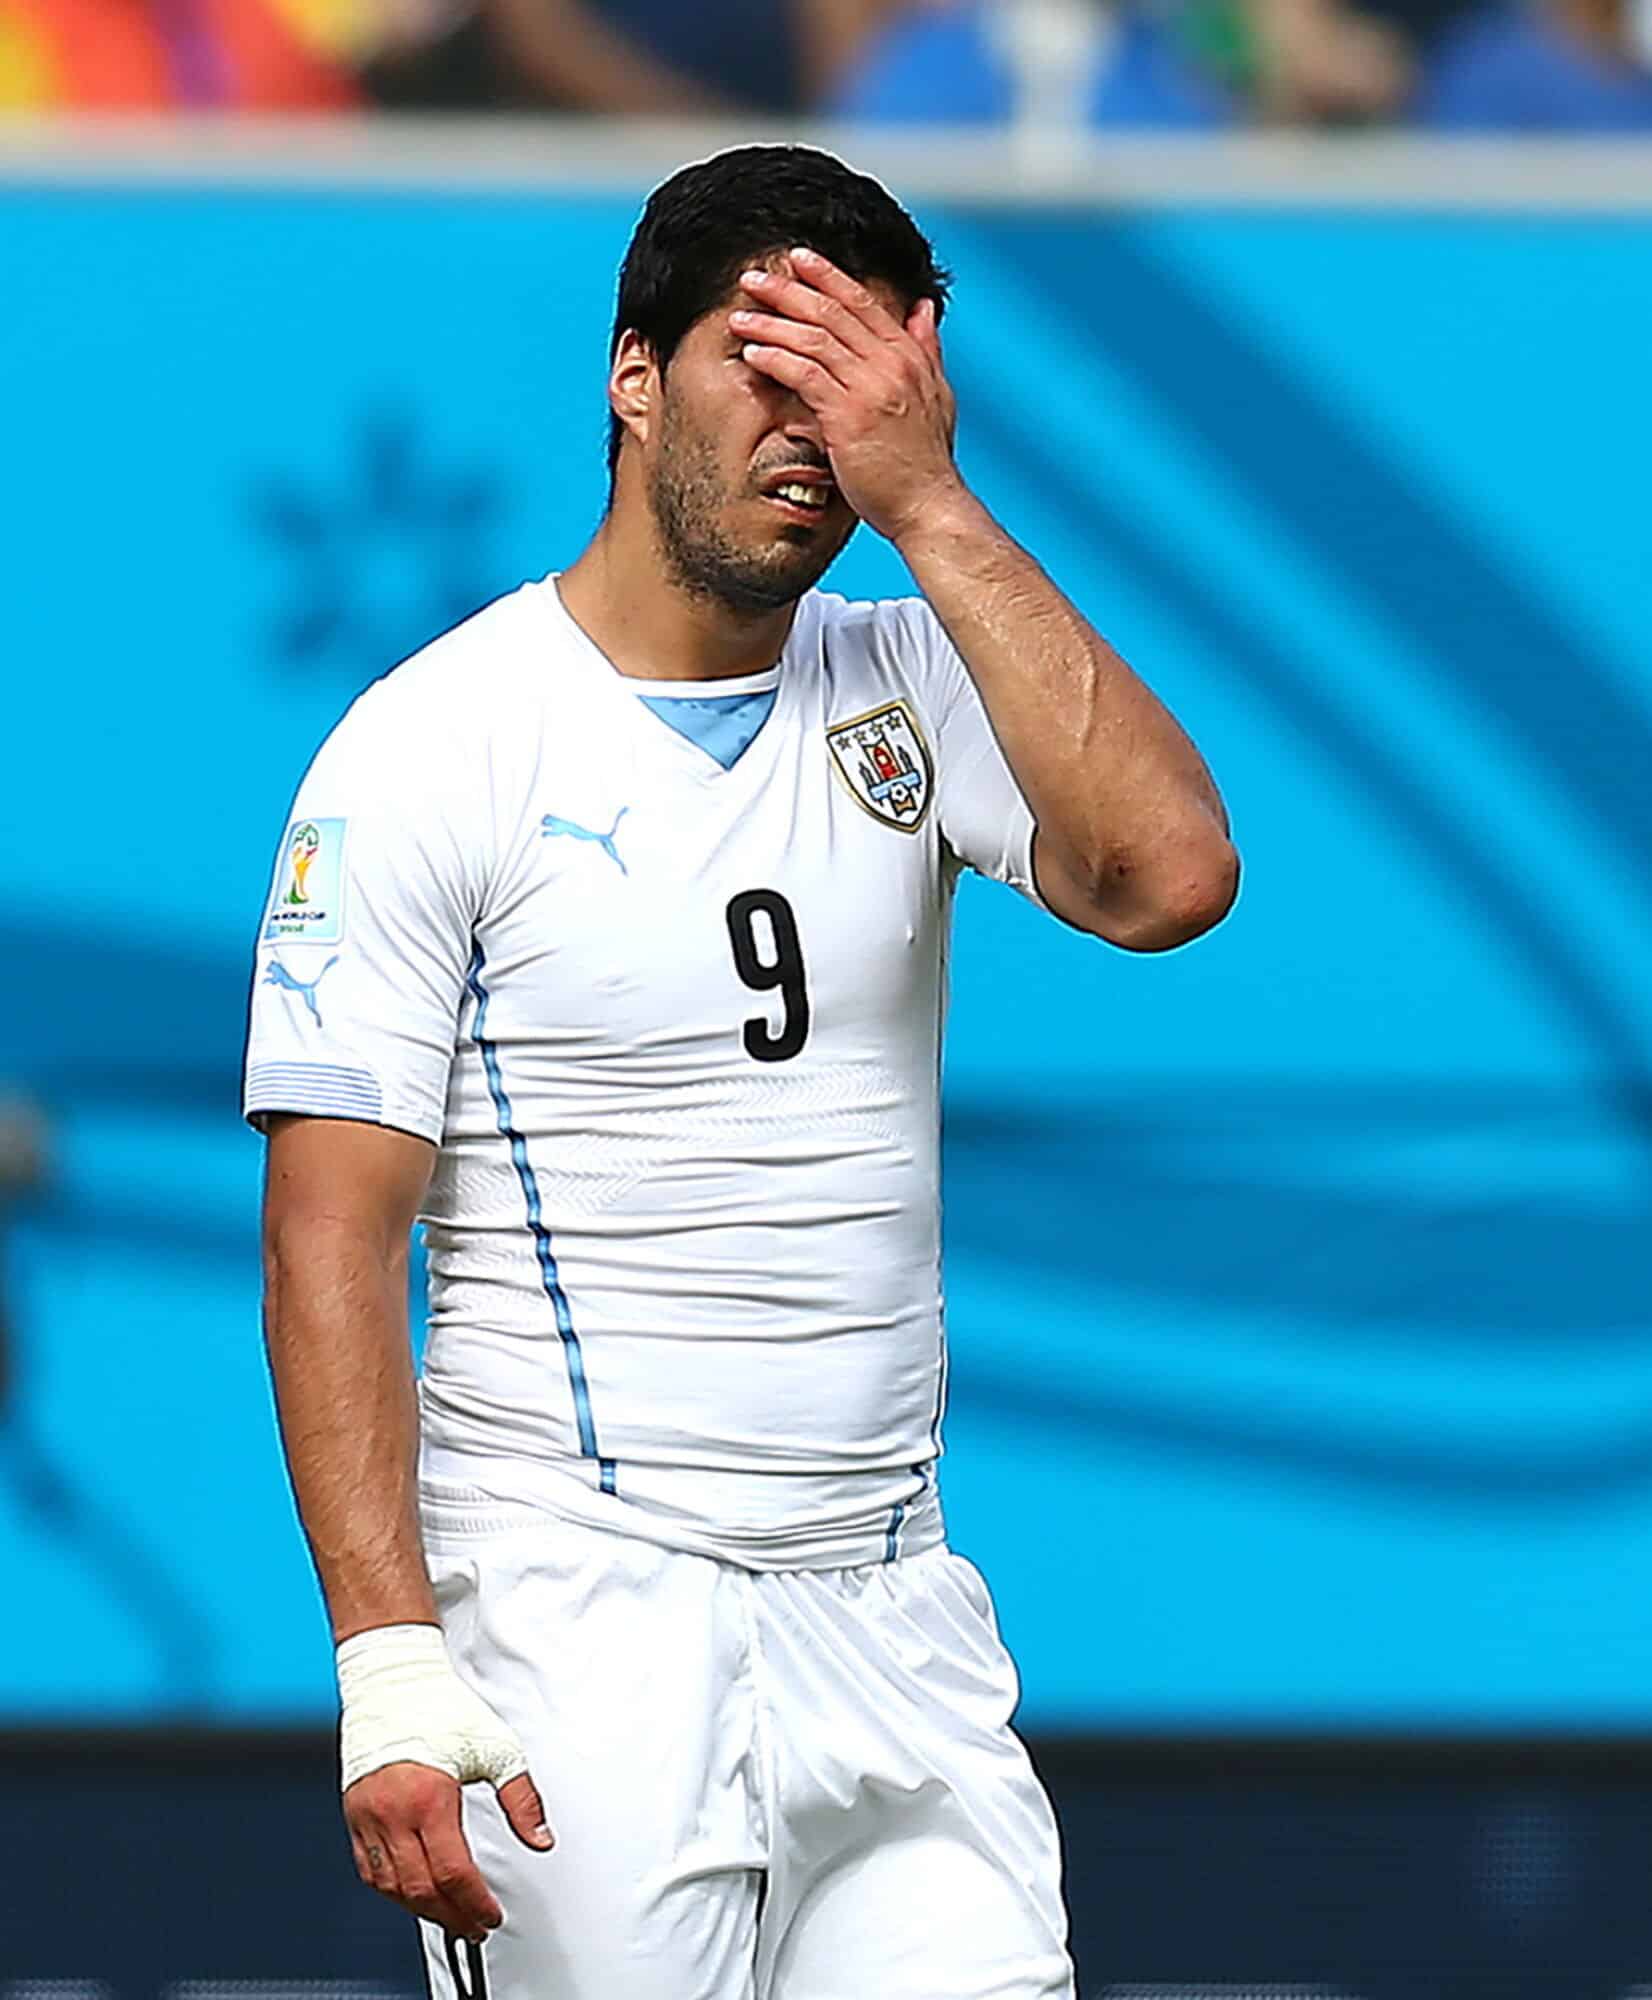 Luis Suarez joga na Copa do Mundo, foto da partida do Uruguai contra Itália, em 2014